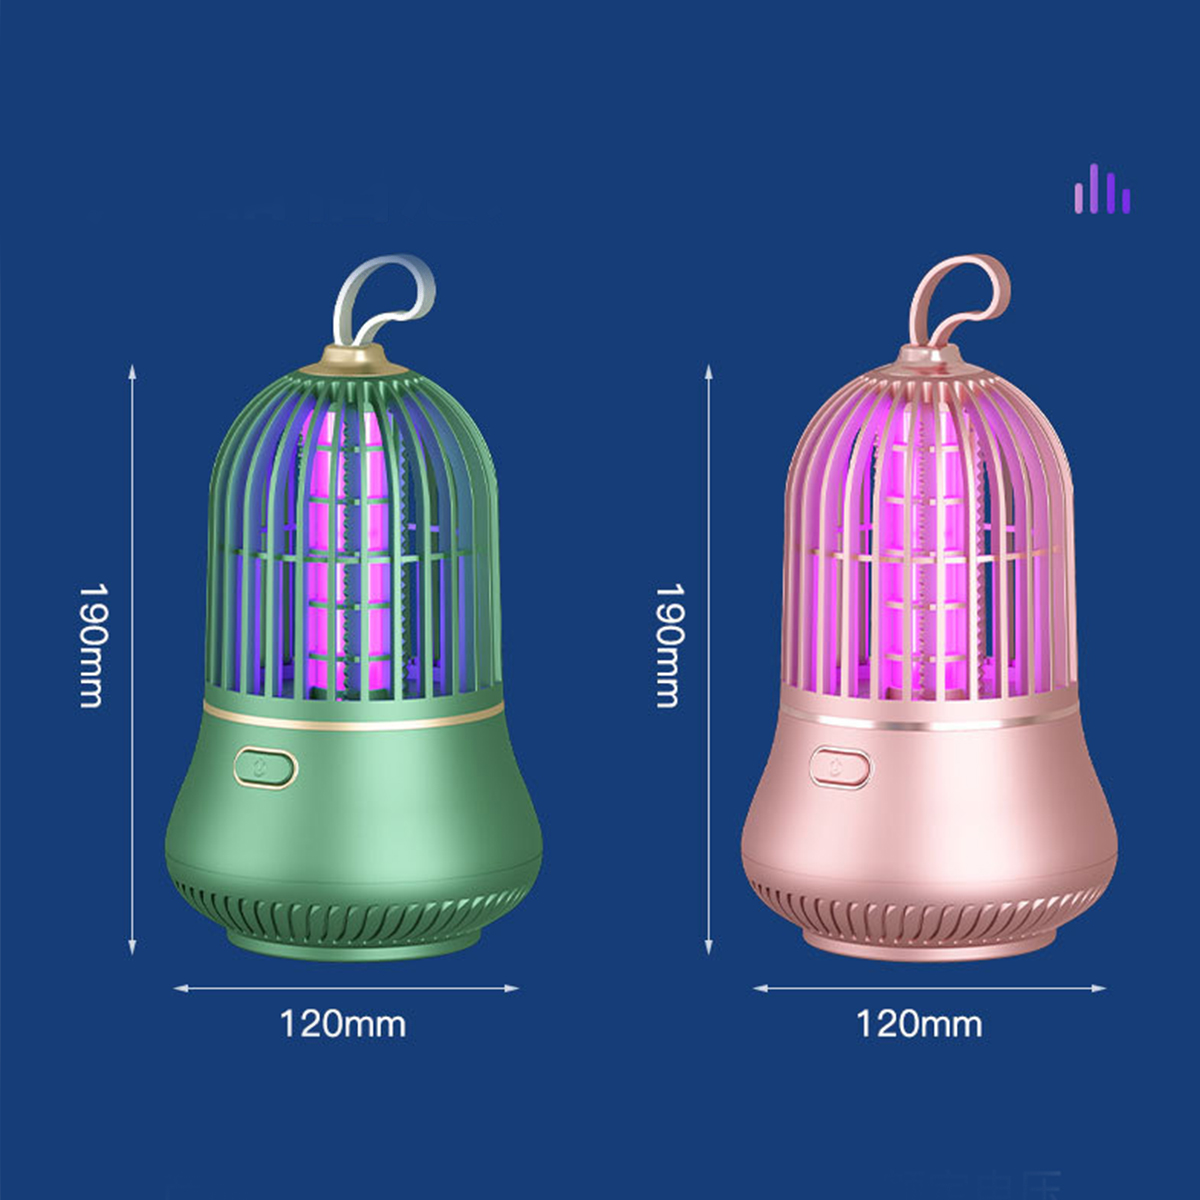 BRIGHTAKE USB-LED Moskito Killer für effektive Insektenvernichter leise Lampe Schädlingsbekämpfung und